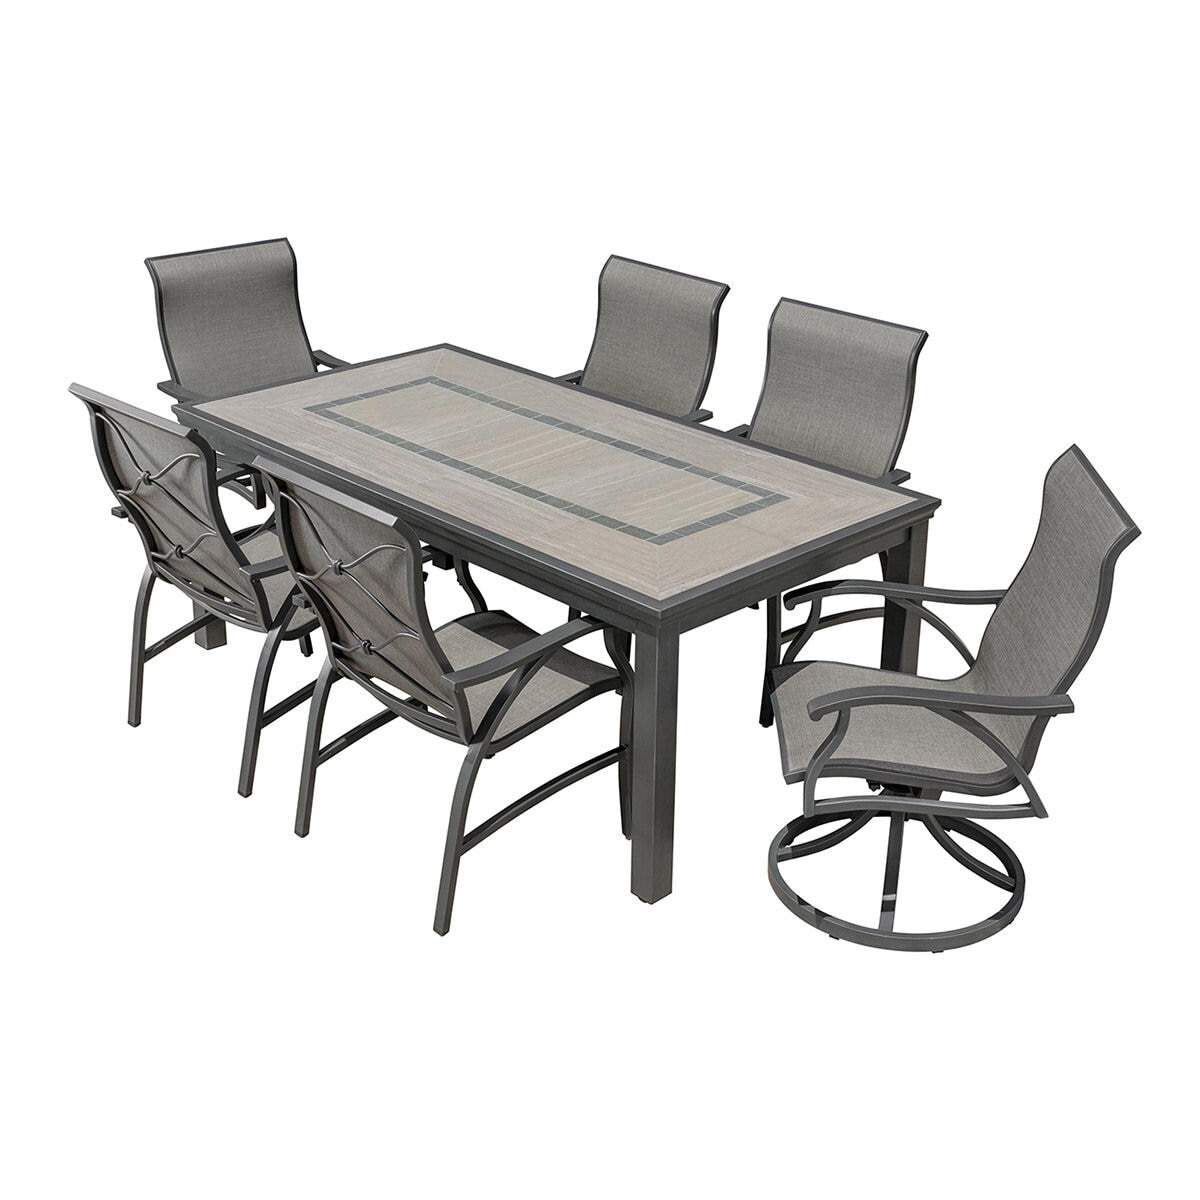 SunVilla Kingston 戶外鋁製餐桌椅七件組